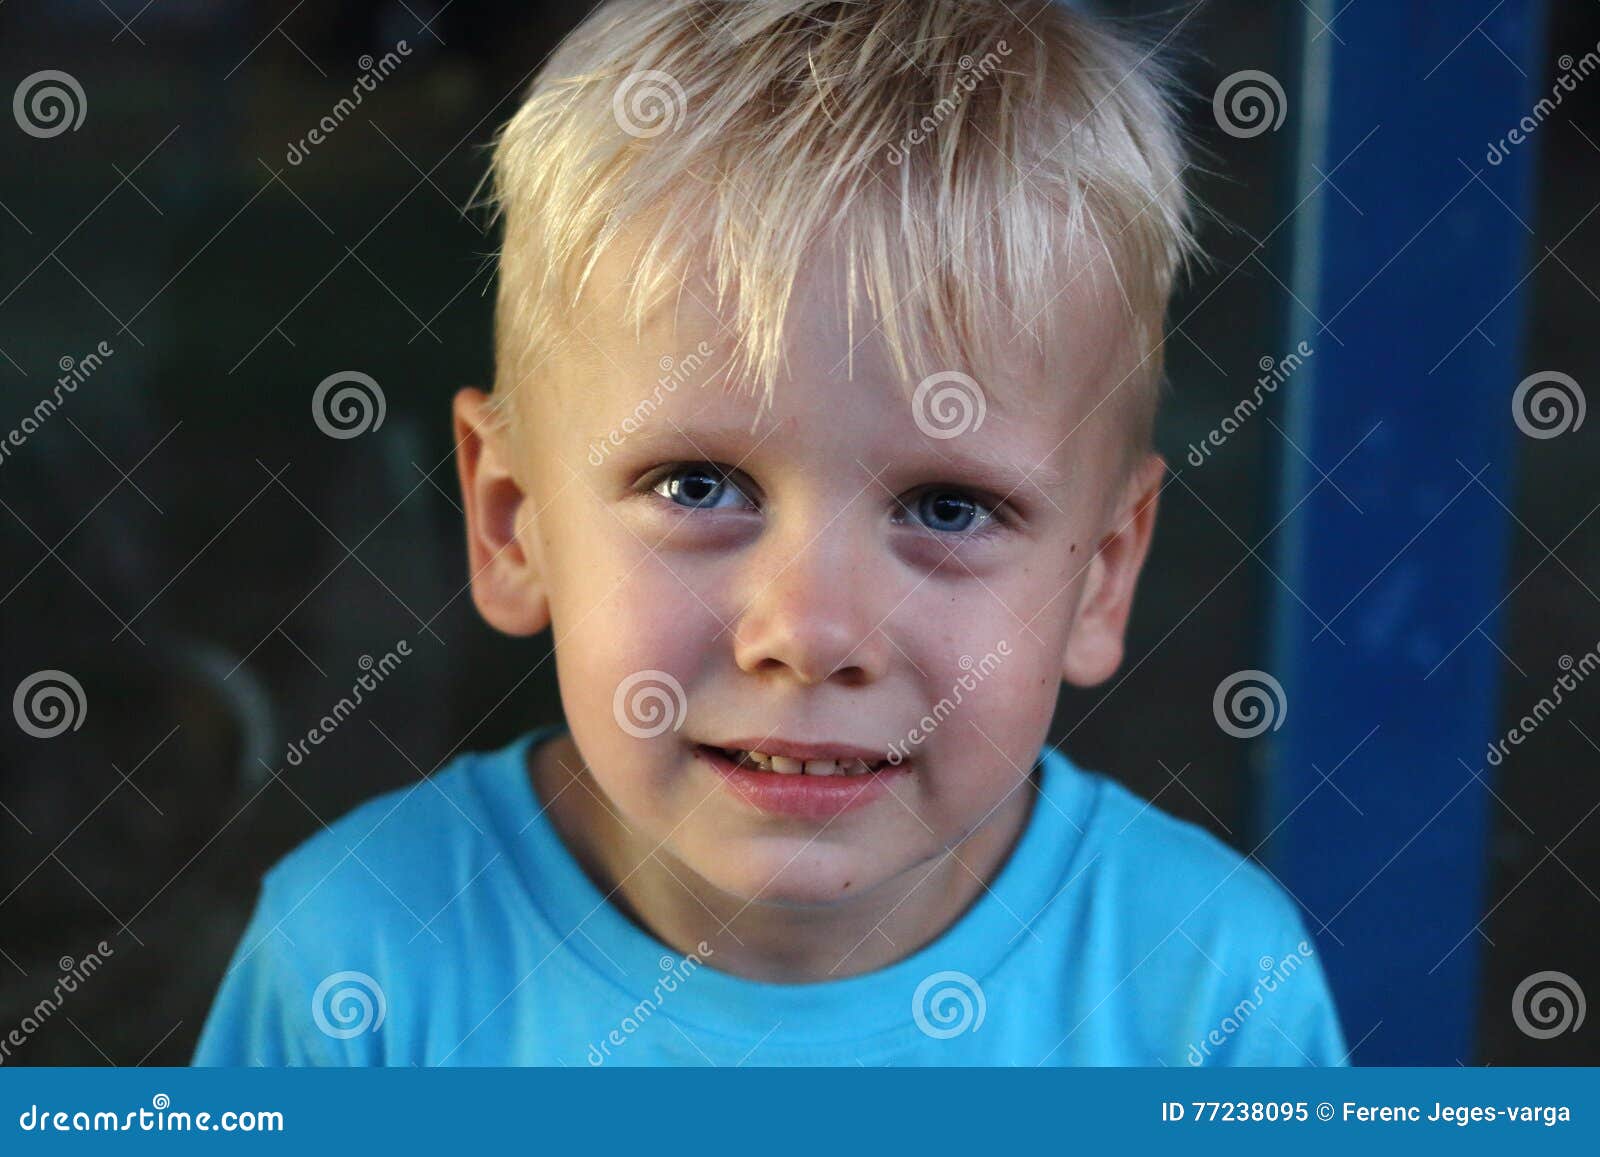 6 Year Old Boy Blonde Hair - wide 6